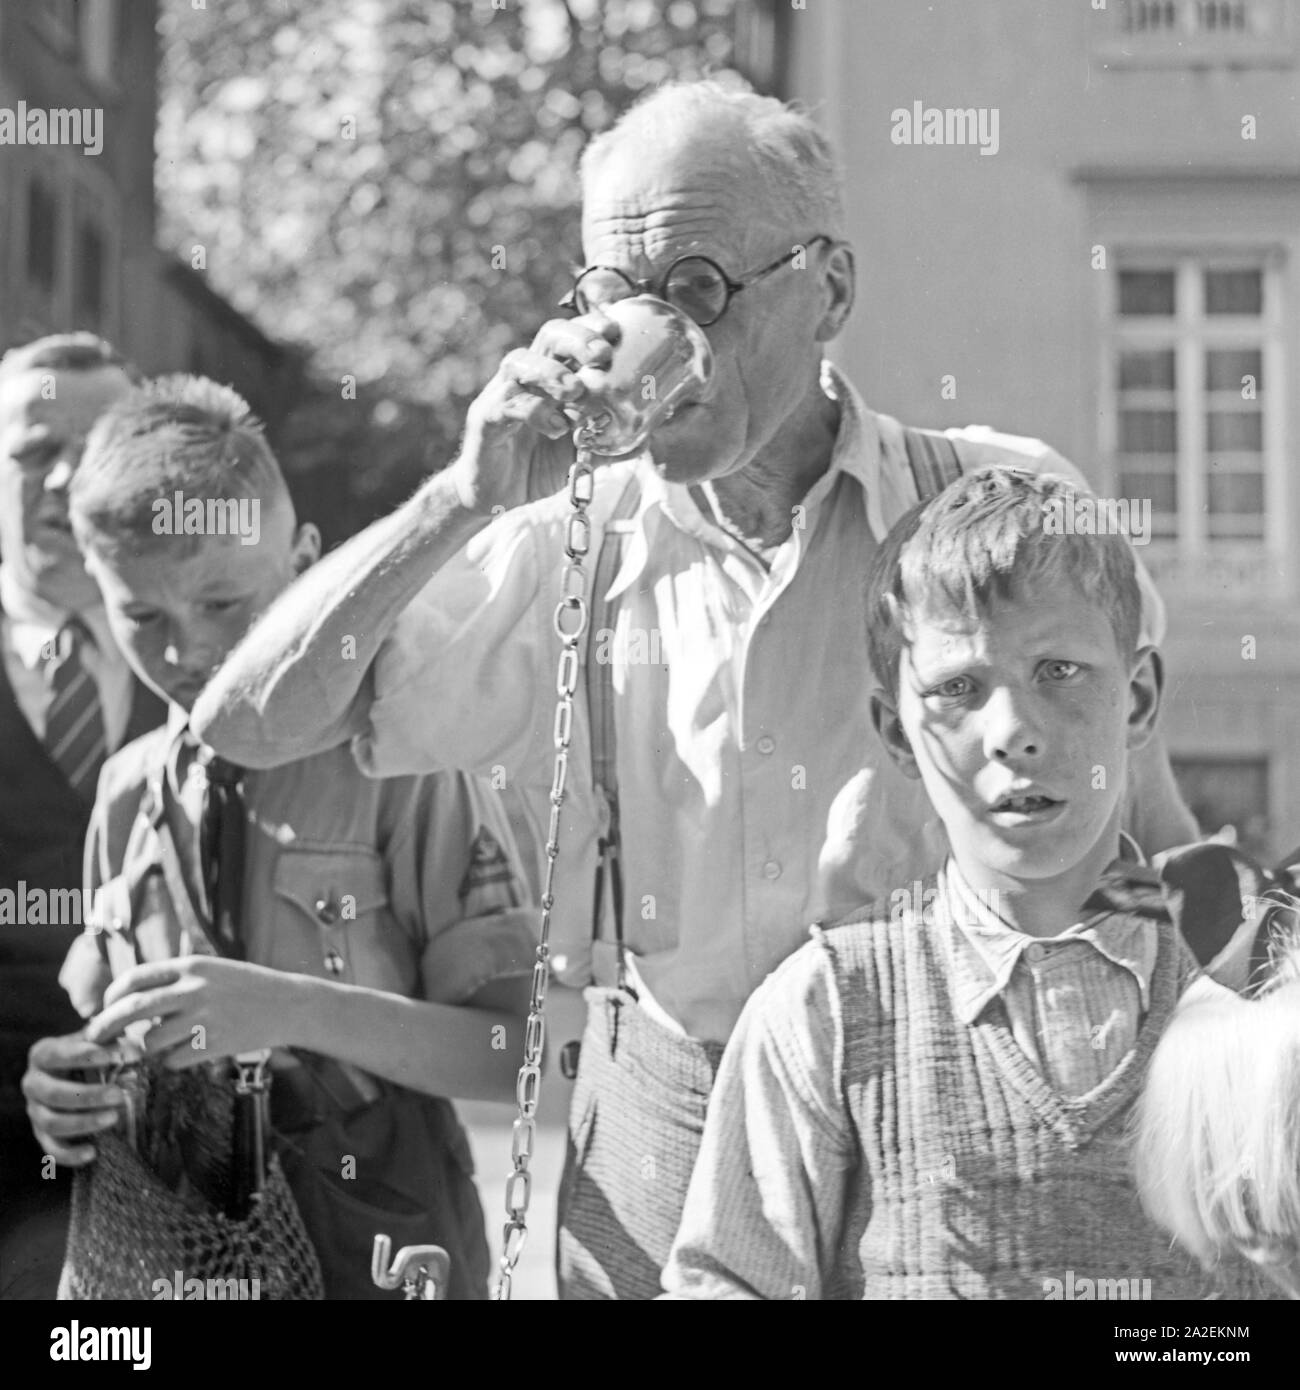 Kurgäste trinken gesundes Wasser aus einem Brunnen in Bad Cannstatt, Deutschland 1930er Jahre. Spa guests drinking wellness water from a well at Bad Cannstatt, Germany 1930s. Stock Photo